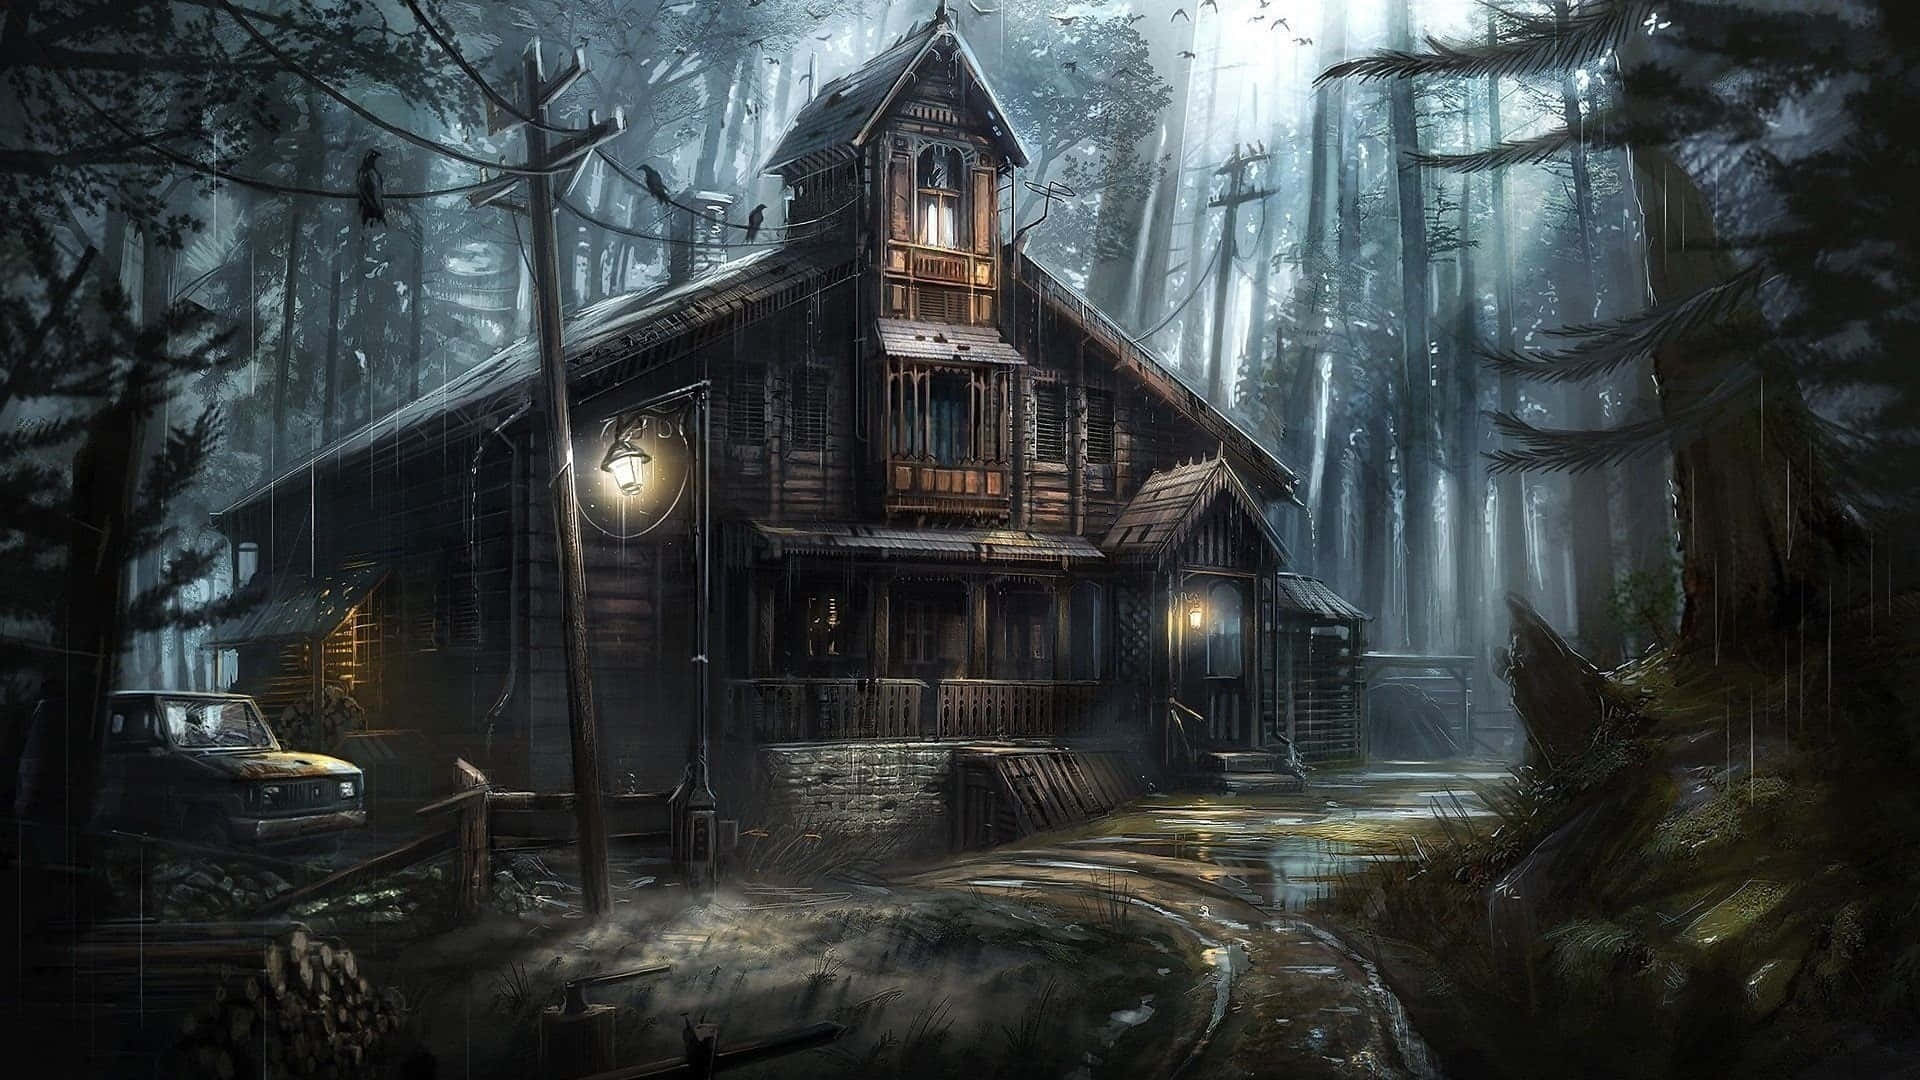 Imagende Fantasía De Una Casa Embrujada En El Bosque Con Fantasmas.